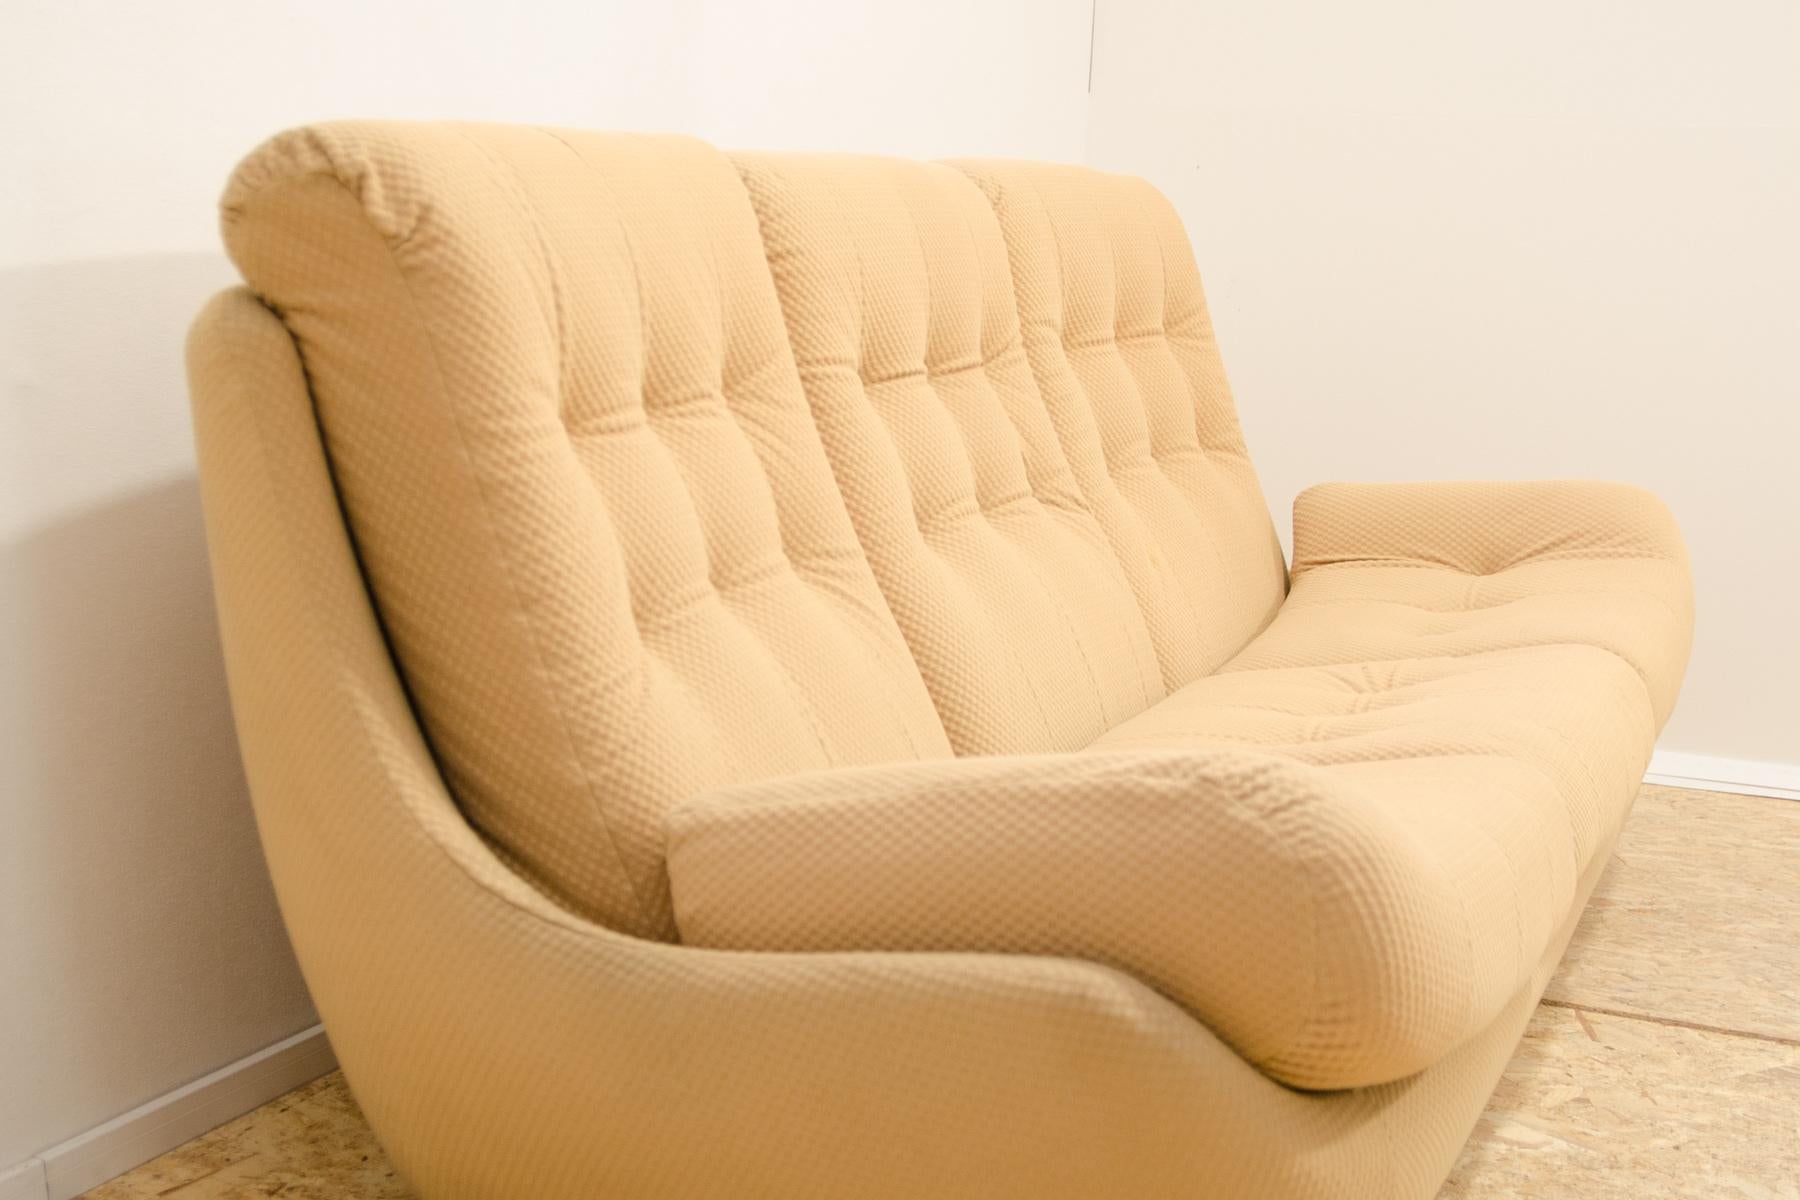 Eastern bloc Vintage sofa by Jitona, Czechoslovakia, 1970´s For Sale 3